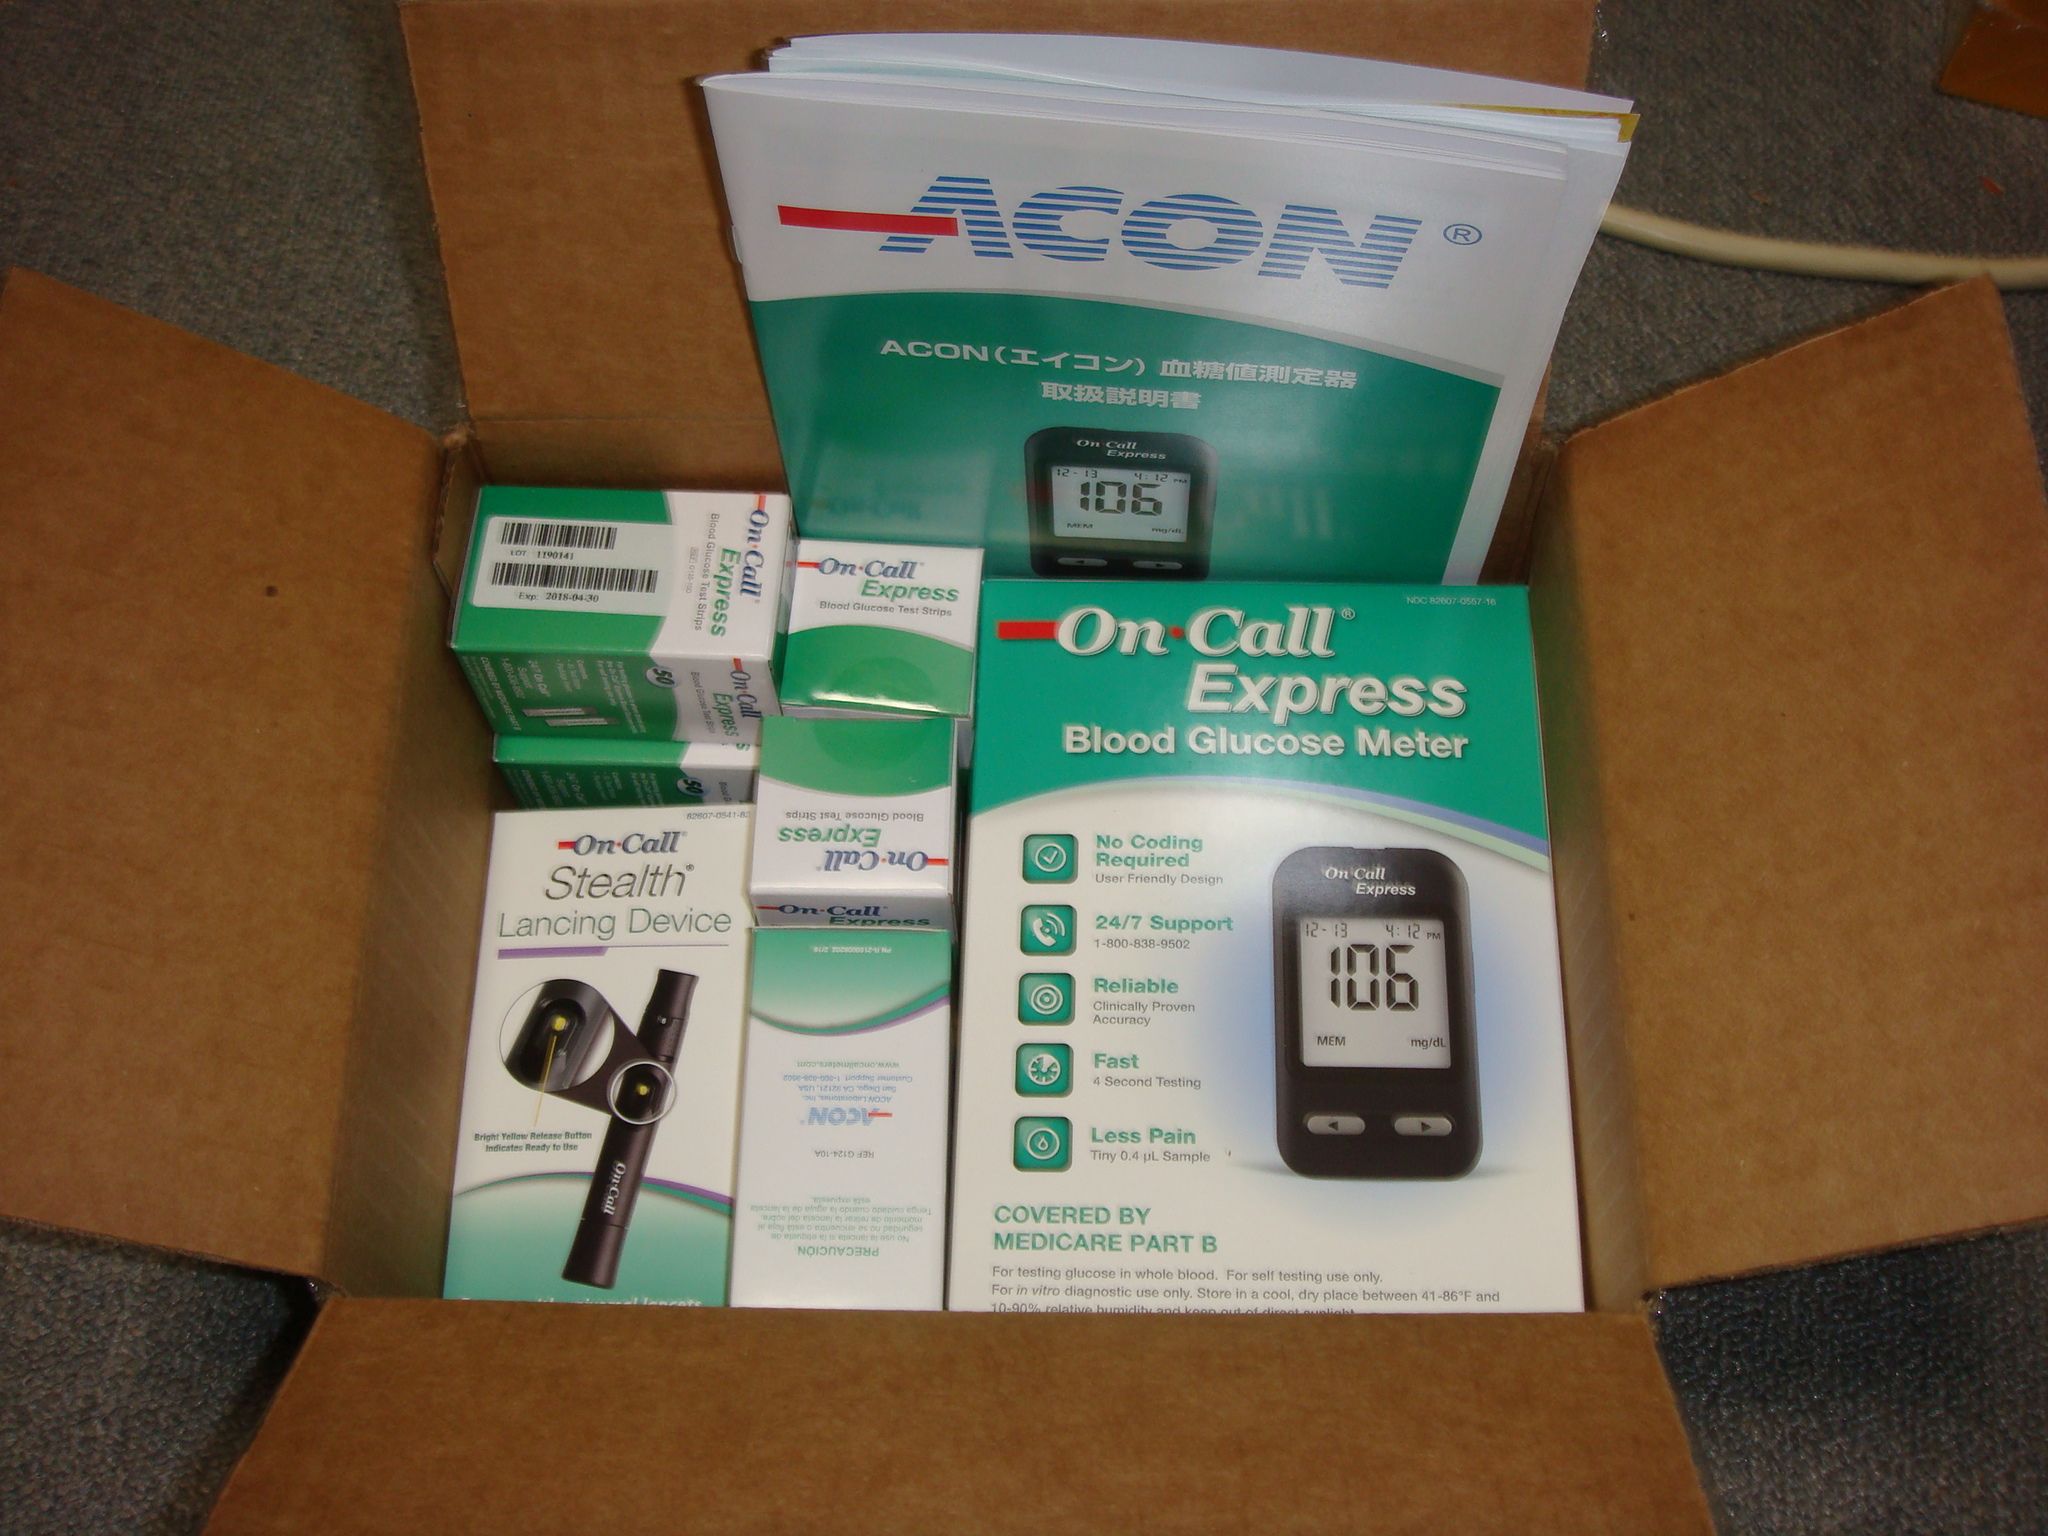 血糖 口コミ Acon 値 測定 器 ACON血糖値測定器を使うのにはどんな意味があるのか～ 実際に使用した感想